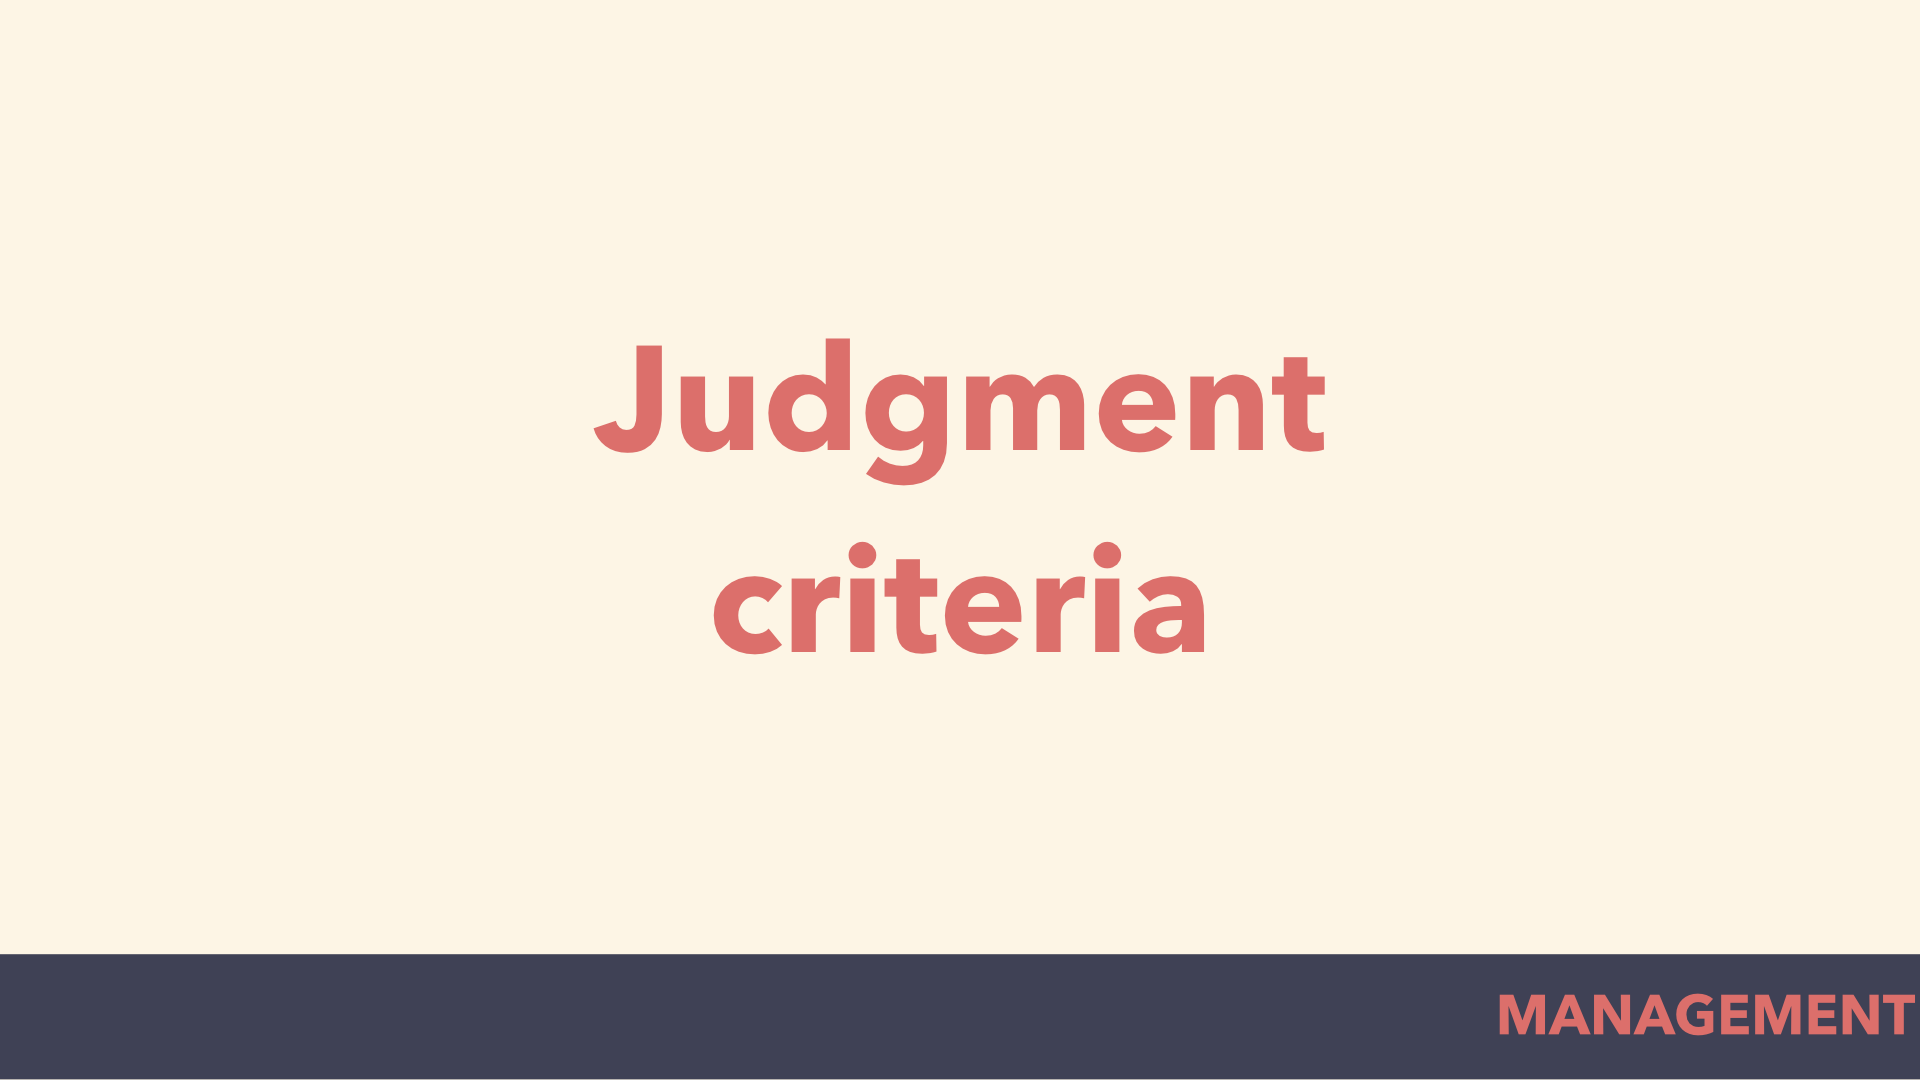 judgment criteria